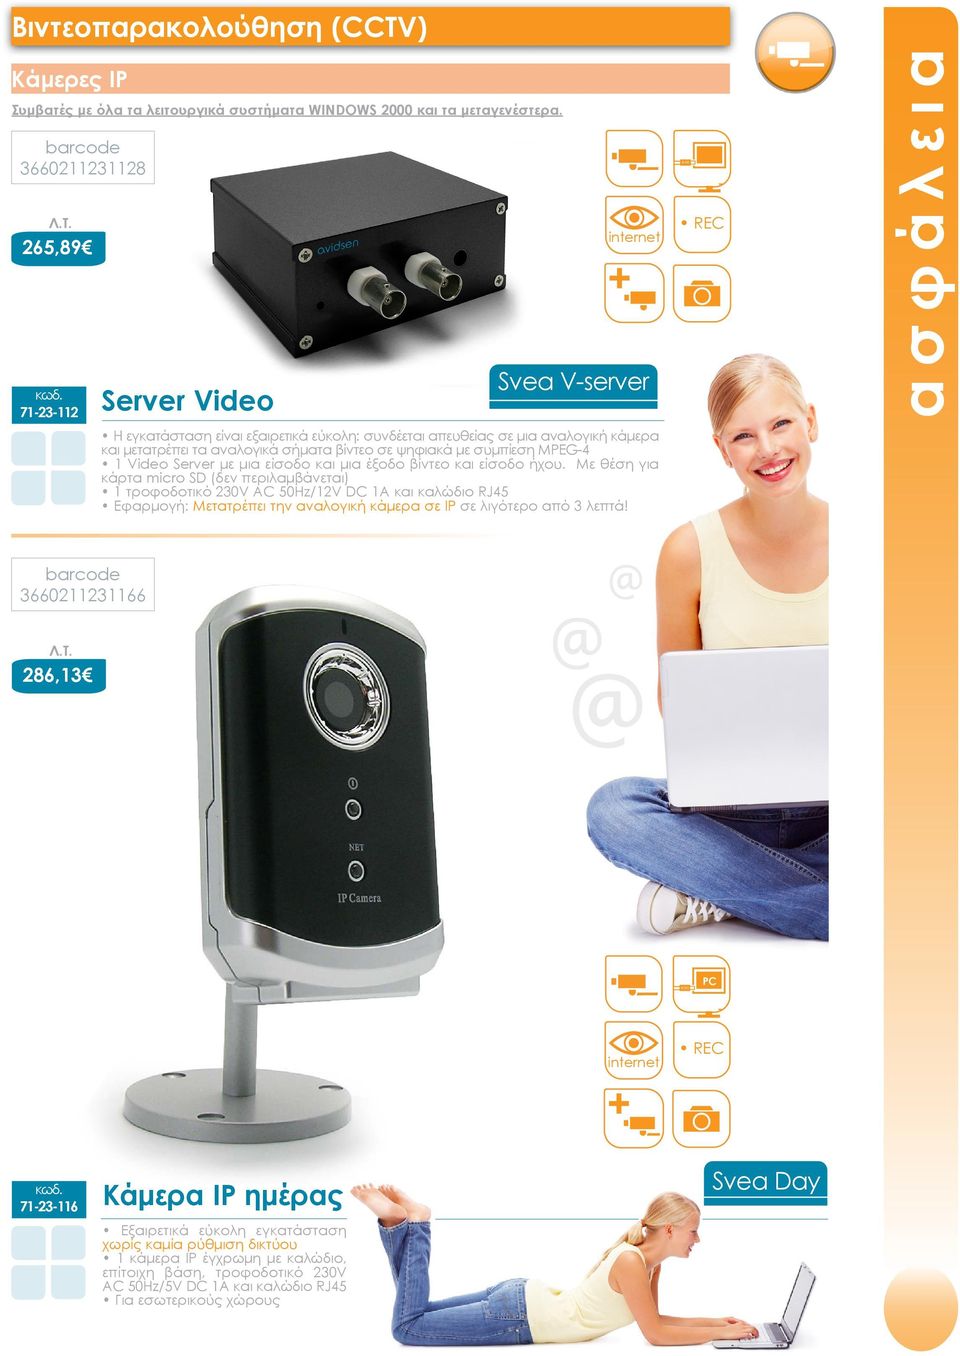 ψηφιακά με συμπίεση MPEG-4 1 Video Server με μια είσοδο και μια έξοδο βίντεο και είσοδο ήχου.